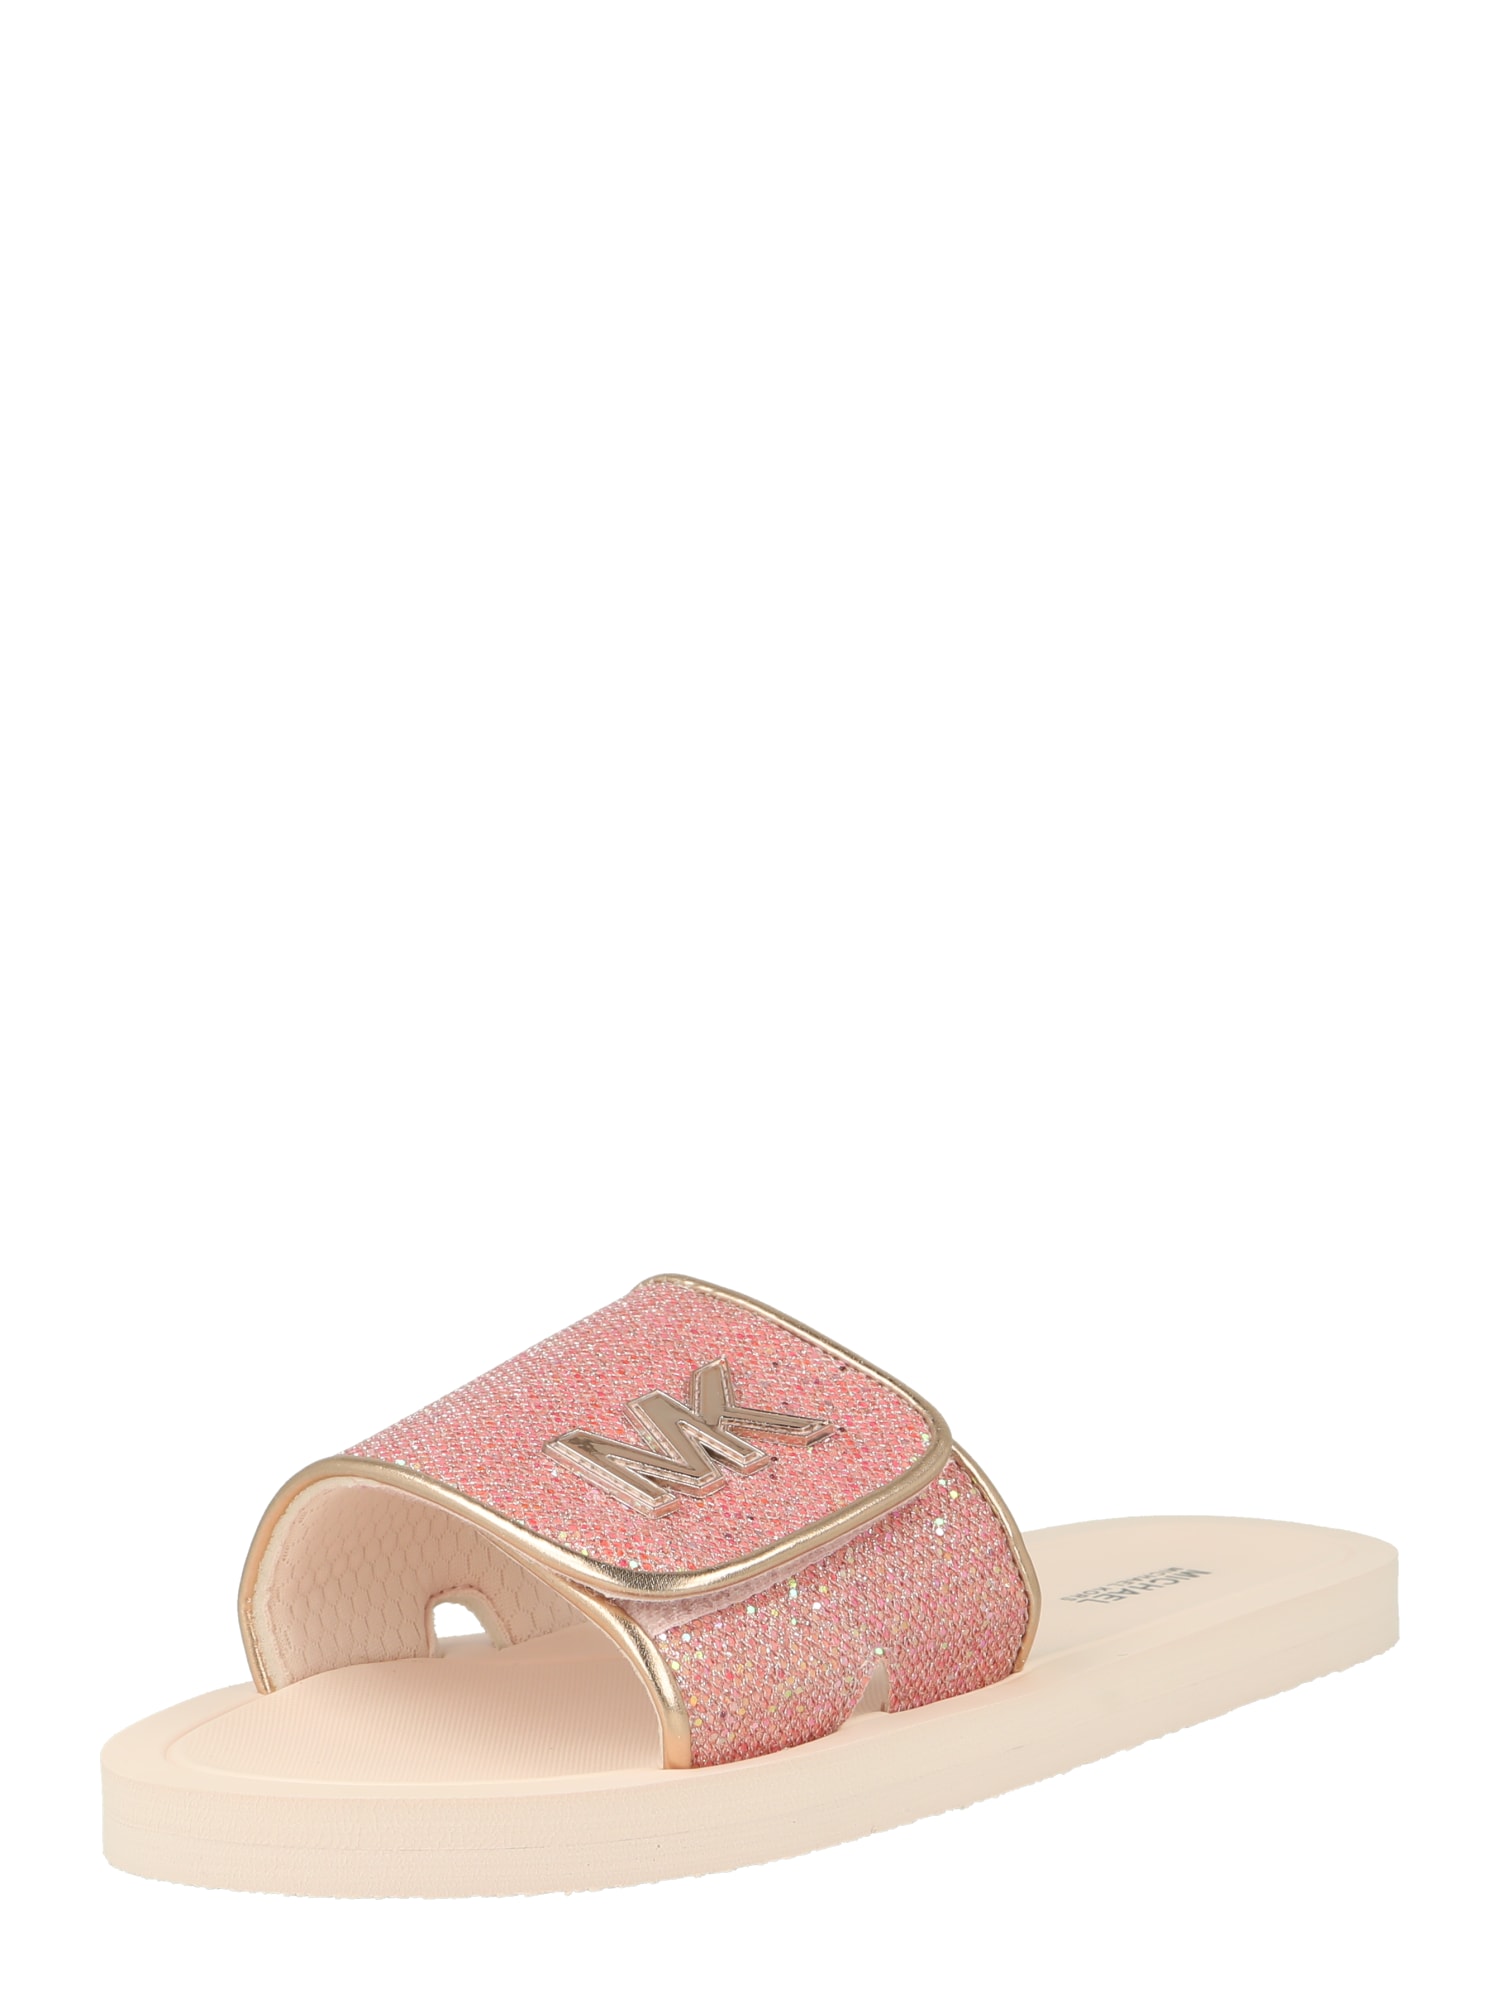 Michael Kors Kids Atviri batai 'Eli Malissa' auksas / ryškiai rožinė spalva